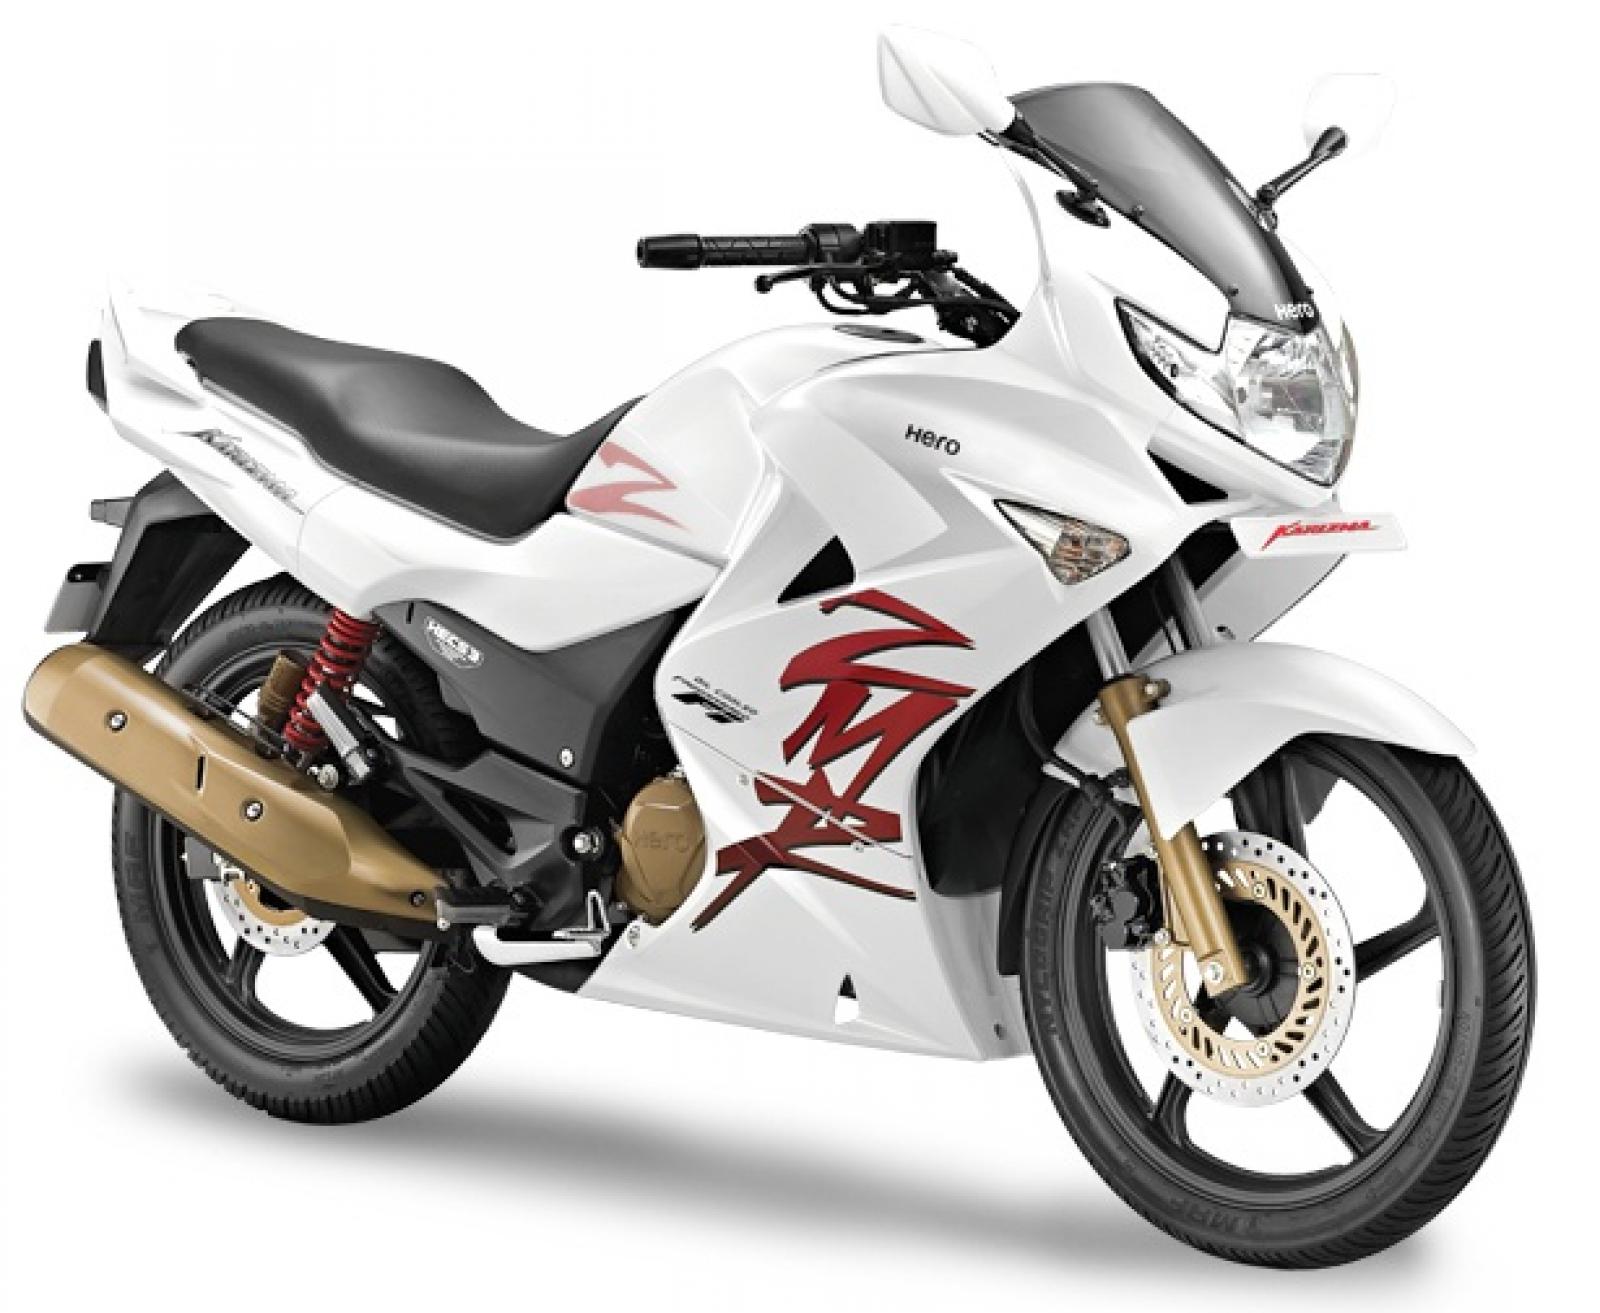 1000 Евро за 223 см3 – мотоциклы Karizma показывают новый эталон ценообразования